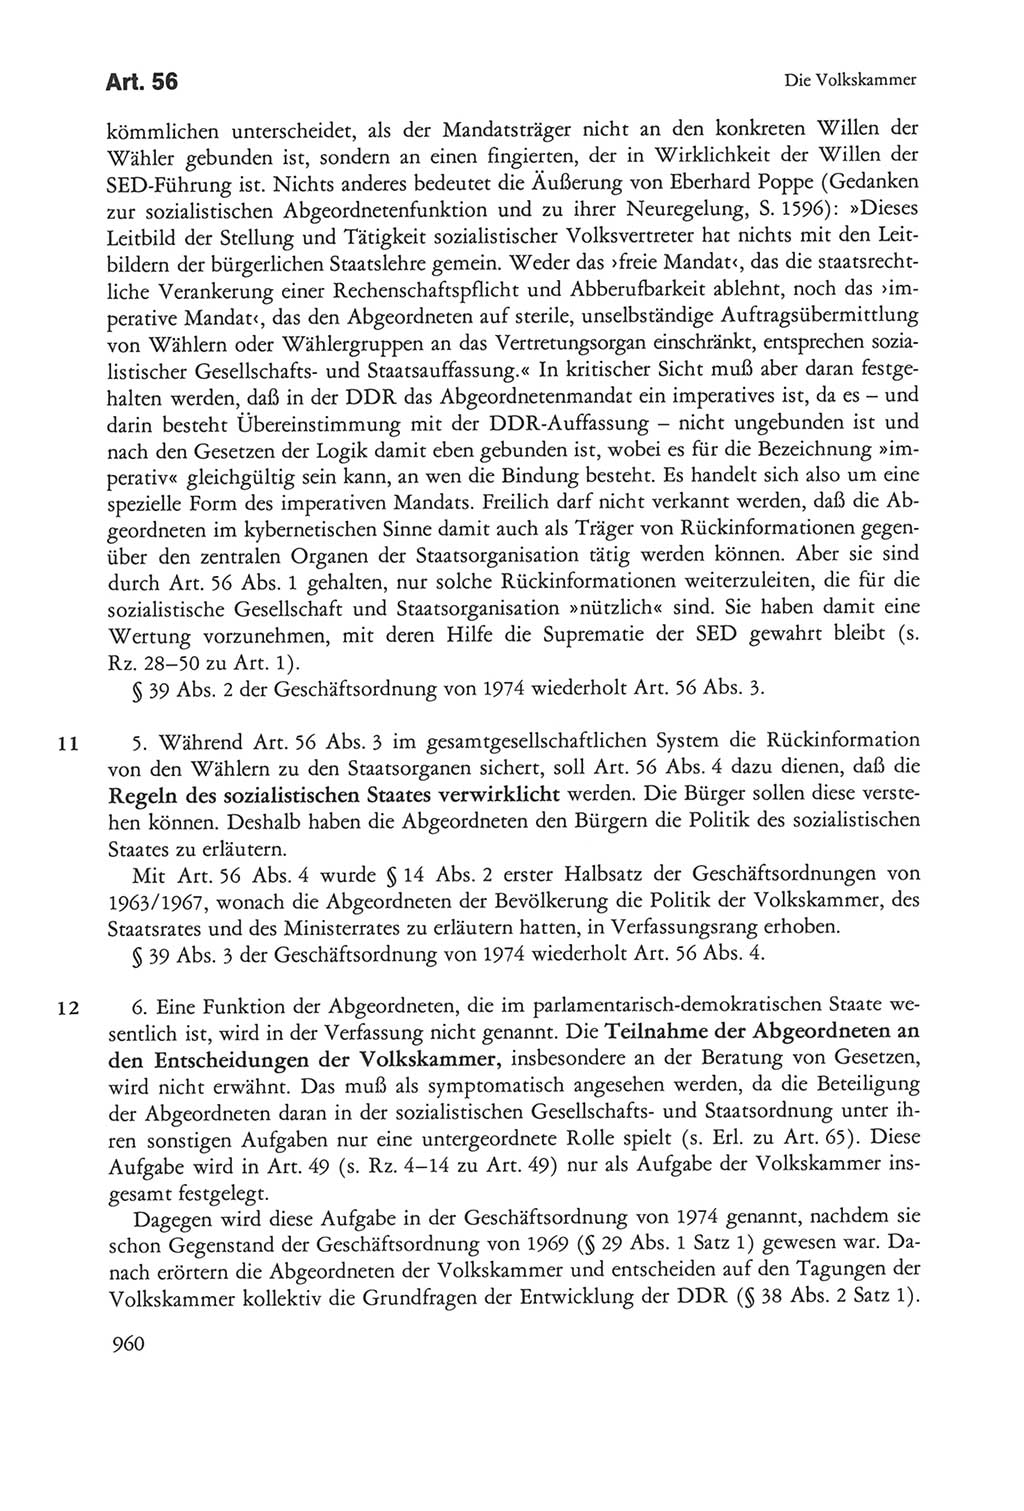 Die sozialistische Verfassung der Deutschen Demokratischen Republik (DDR), Kommentar 1982, Seite 960 (Soz. Verf. DDR Komm. 1982, S. 960)